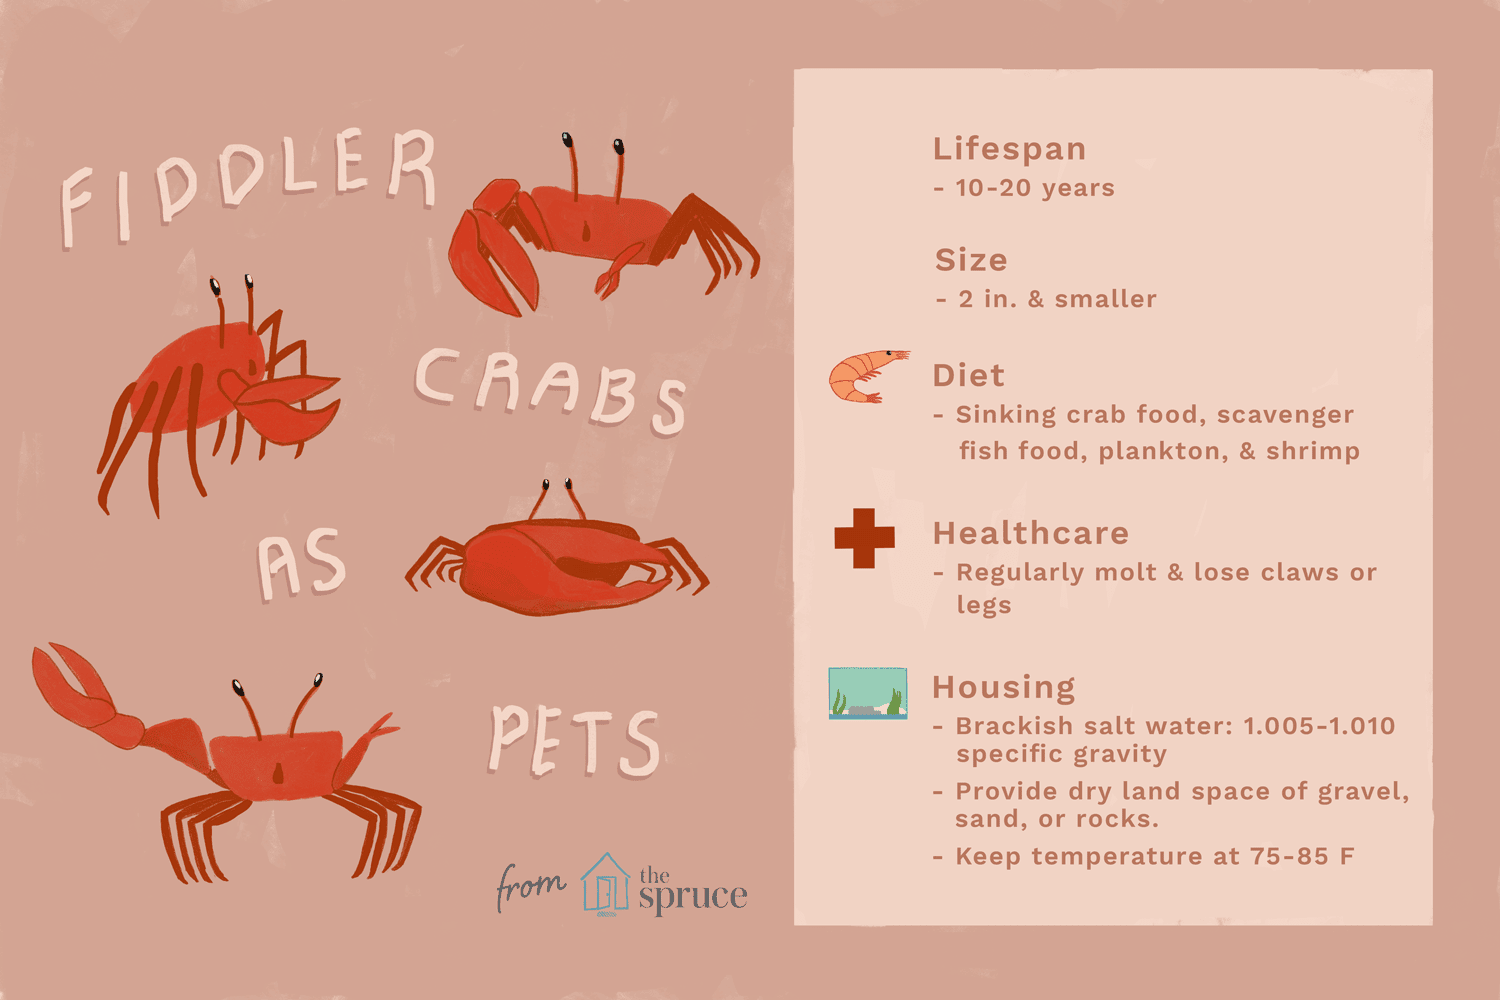 Fiddler crabs as pets illustration